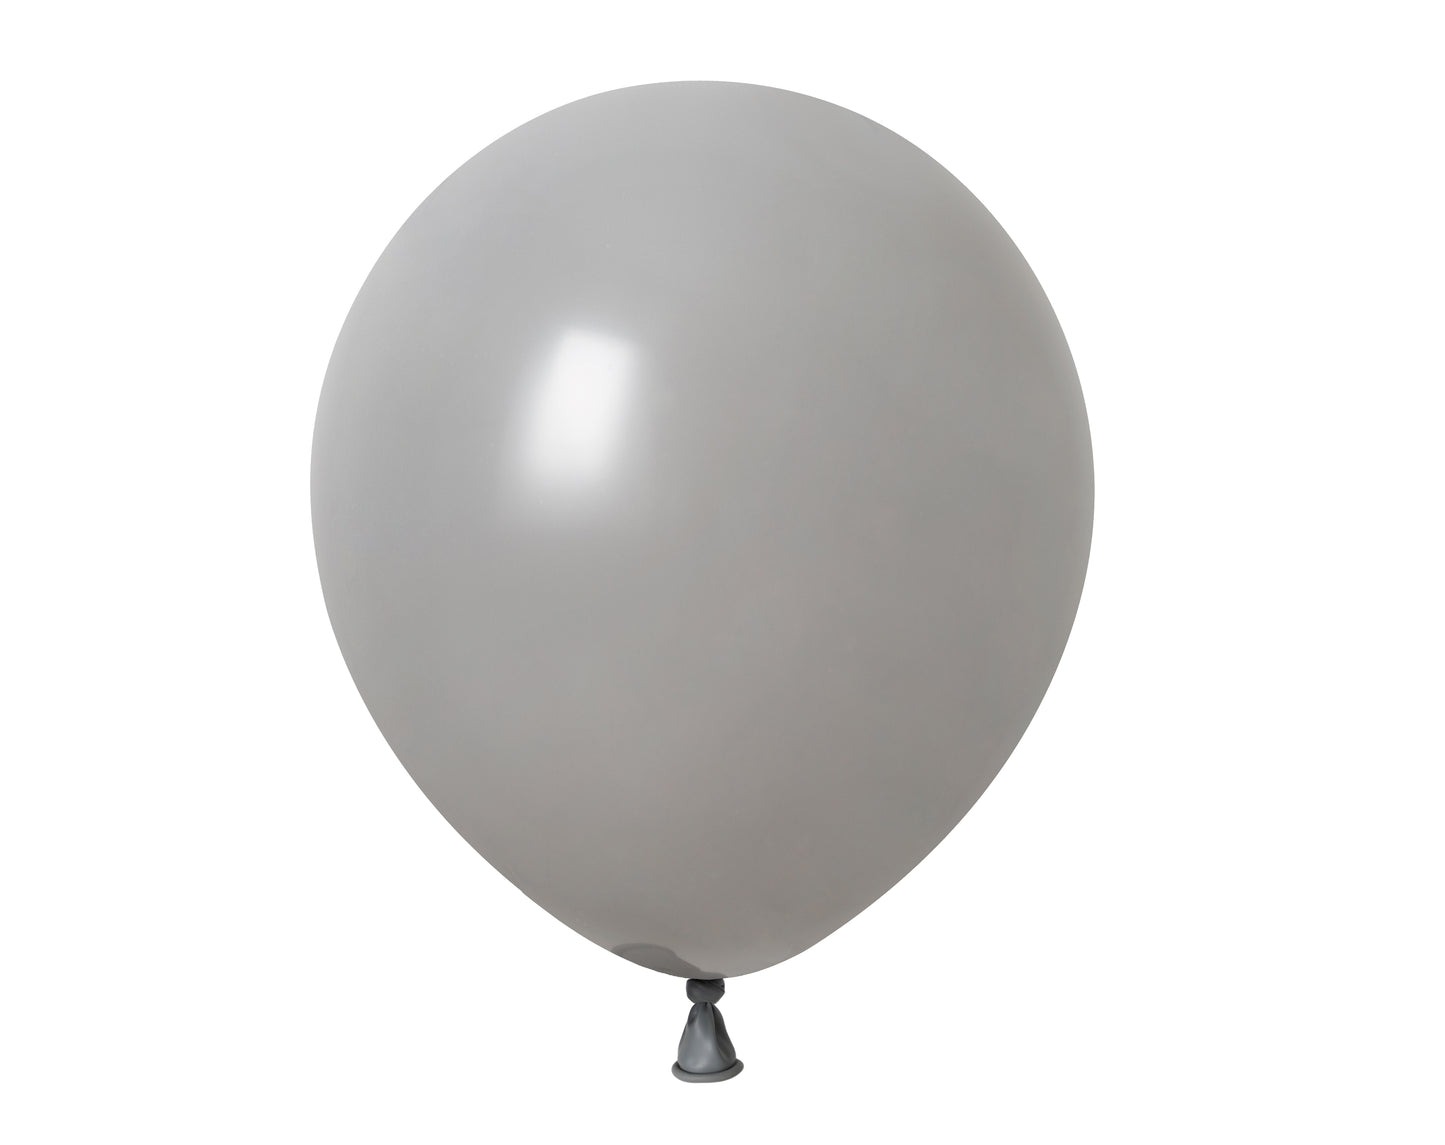 Winntex Premium 12" Gray Latex Balloon 100ct